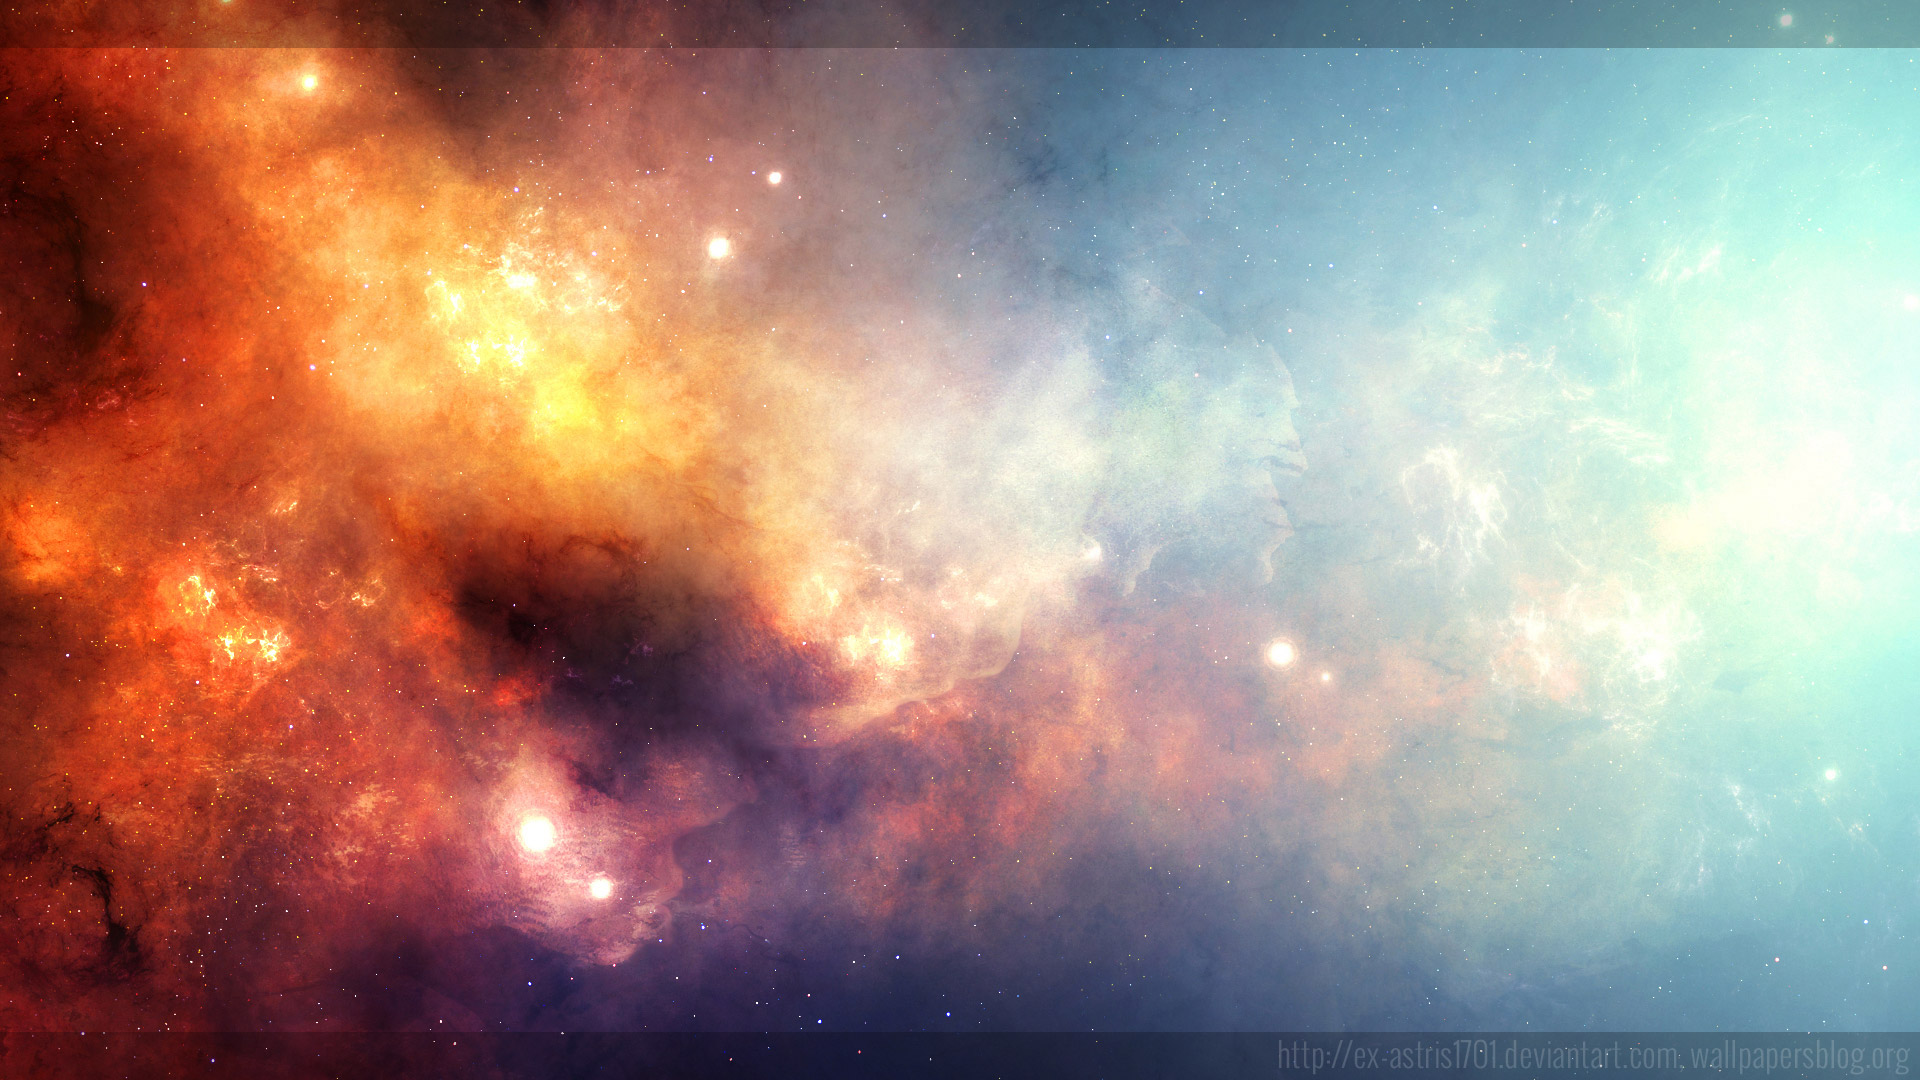 sfondi 1920x1080 full hd 1080p,cielo,atmosfera,nebulosa,oggetto astronomico,spazio